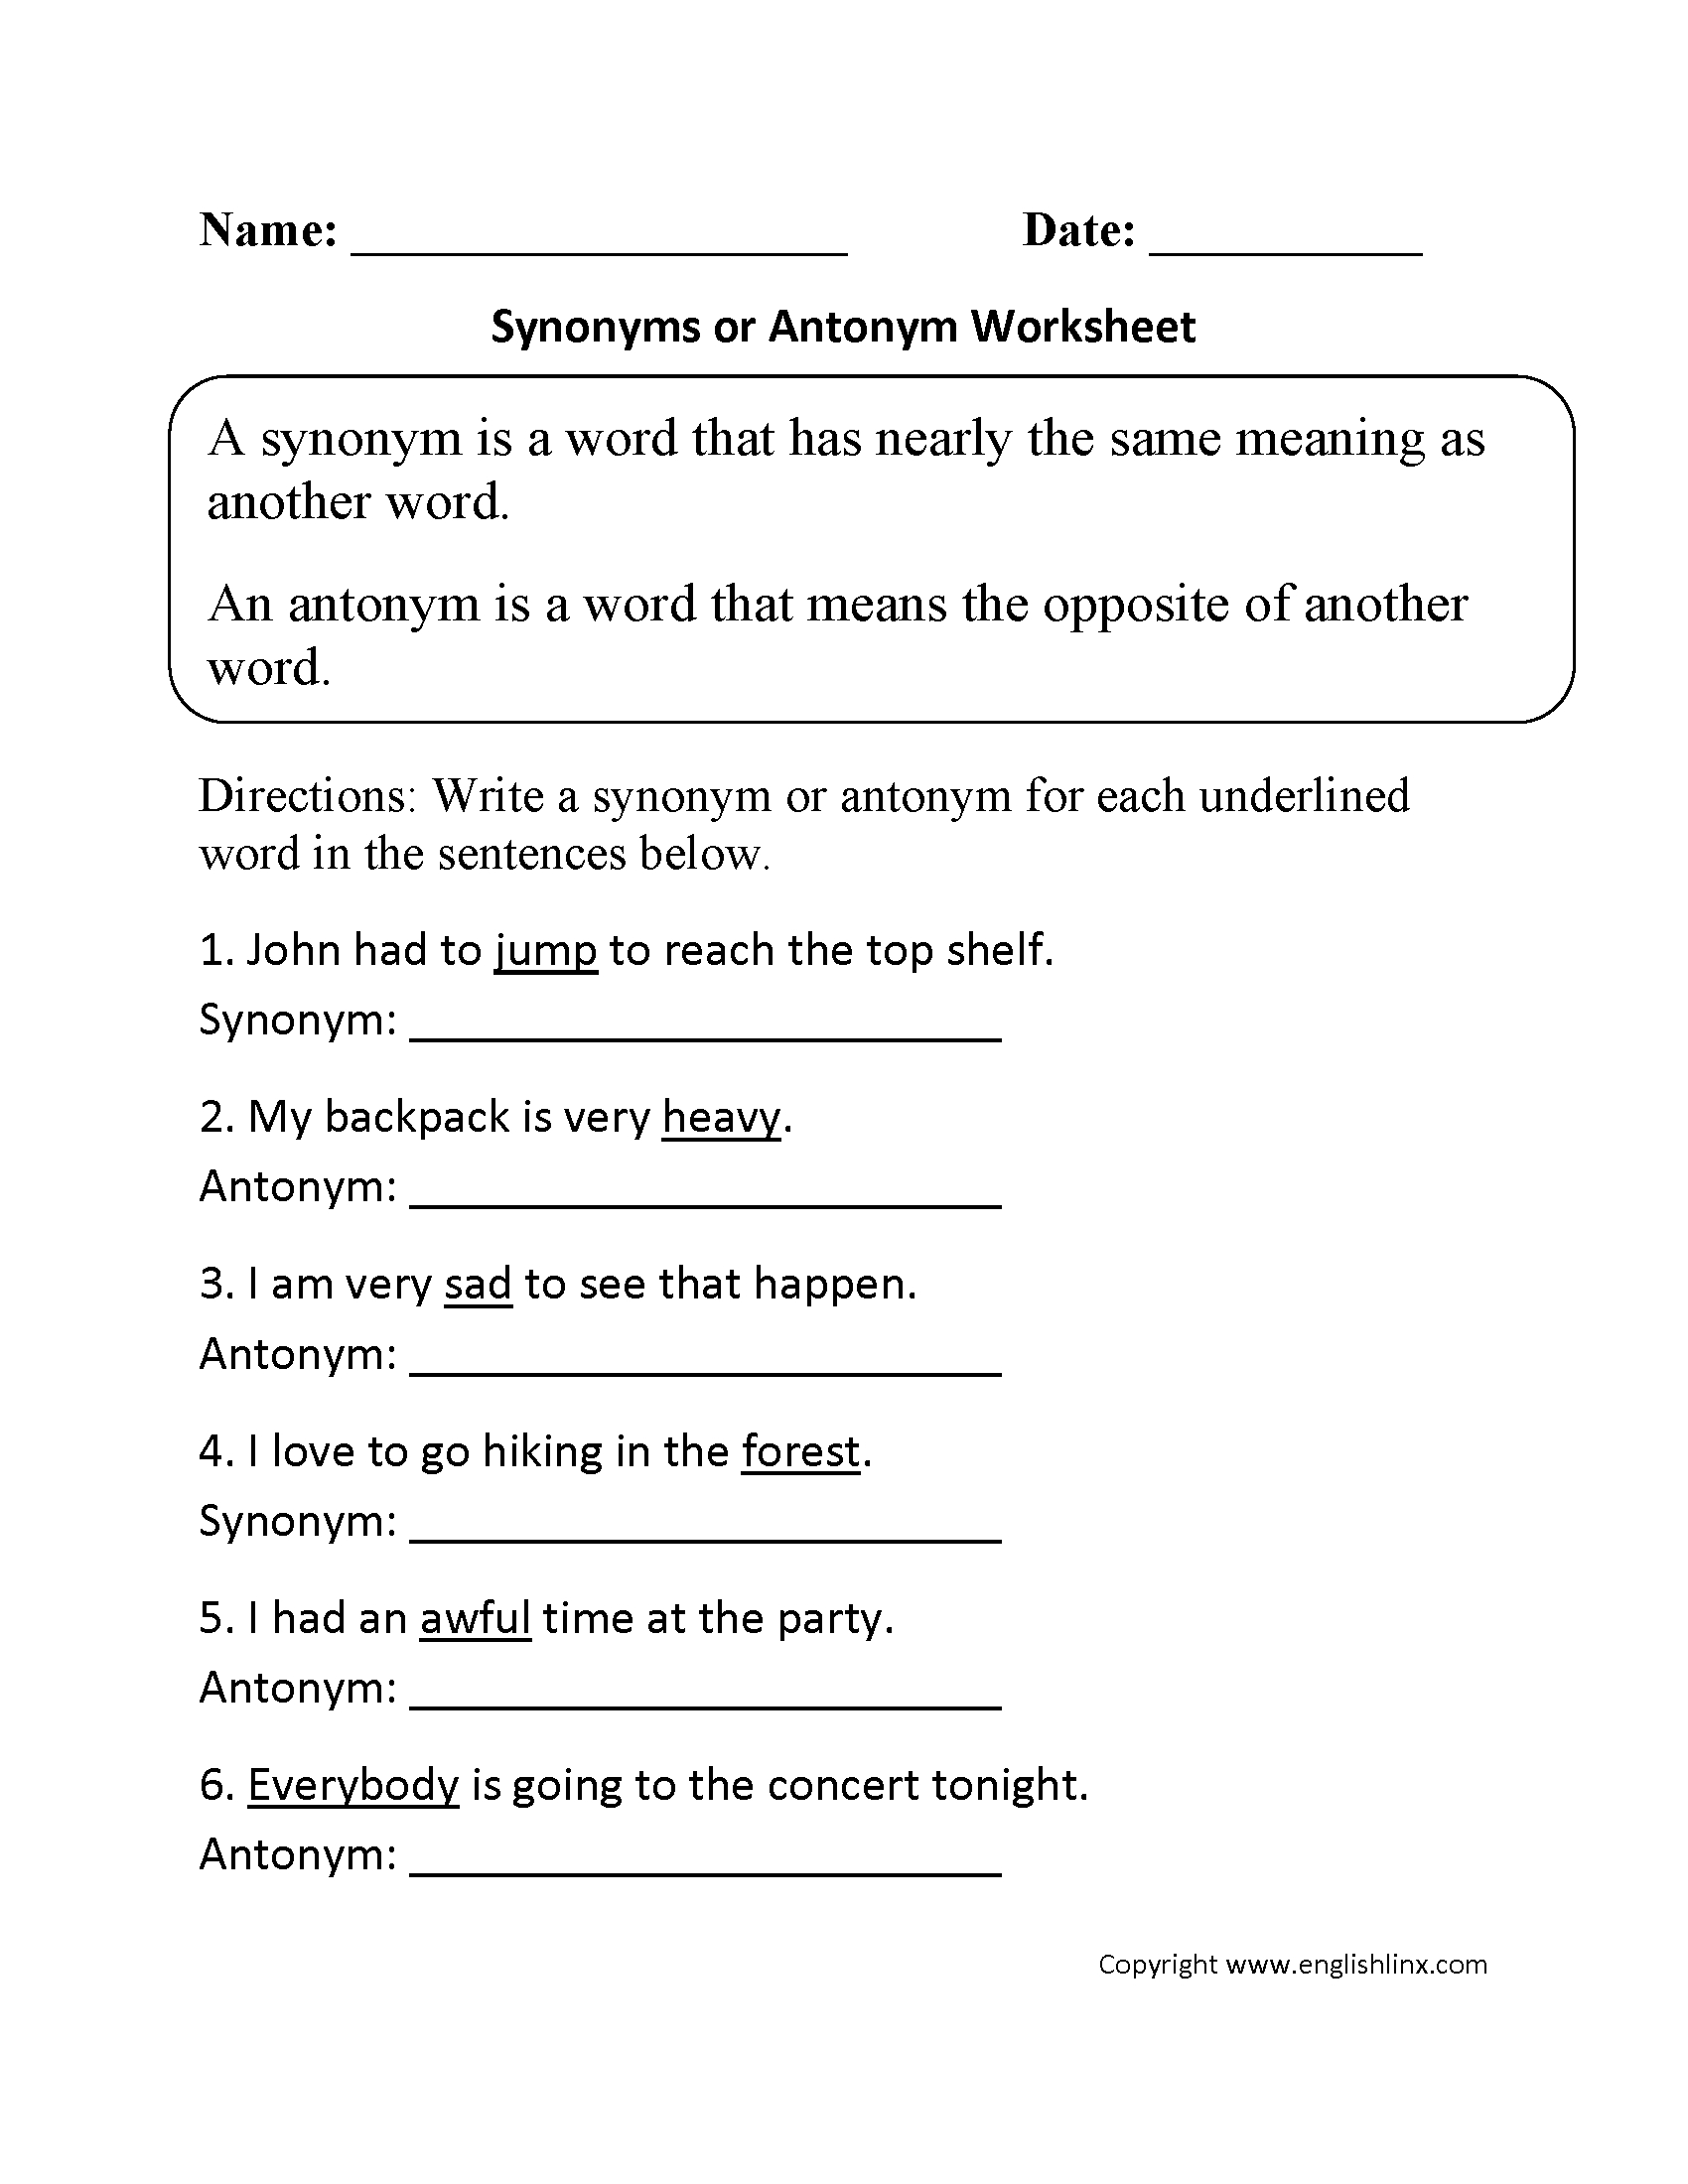 Vocabulary Worksheets | Synonym And Antonym Worksheets | Free Printable Worksheets Synonyms Antonyms And Homonyms